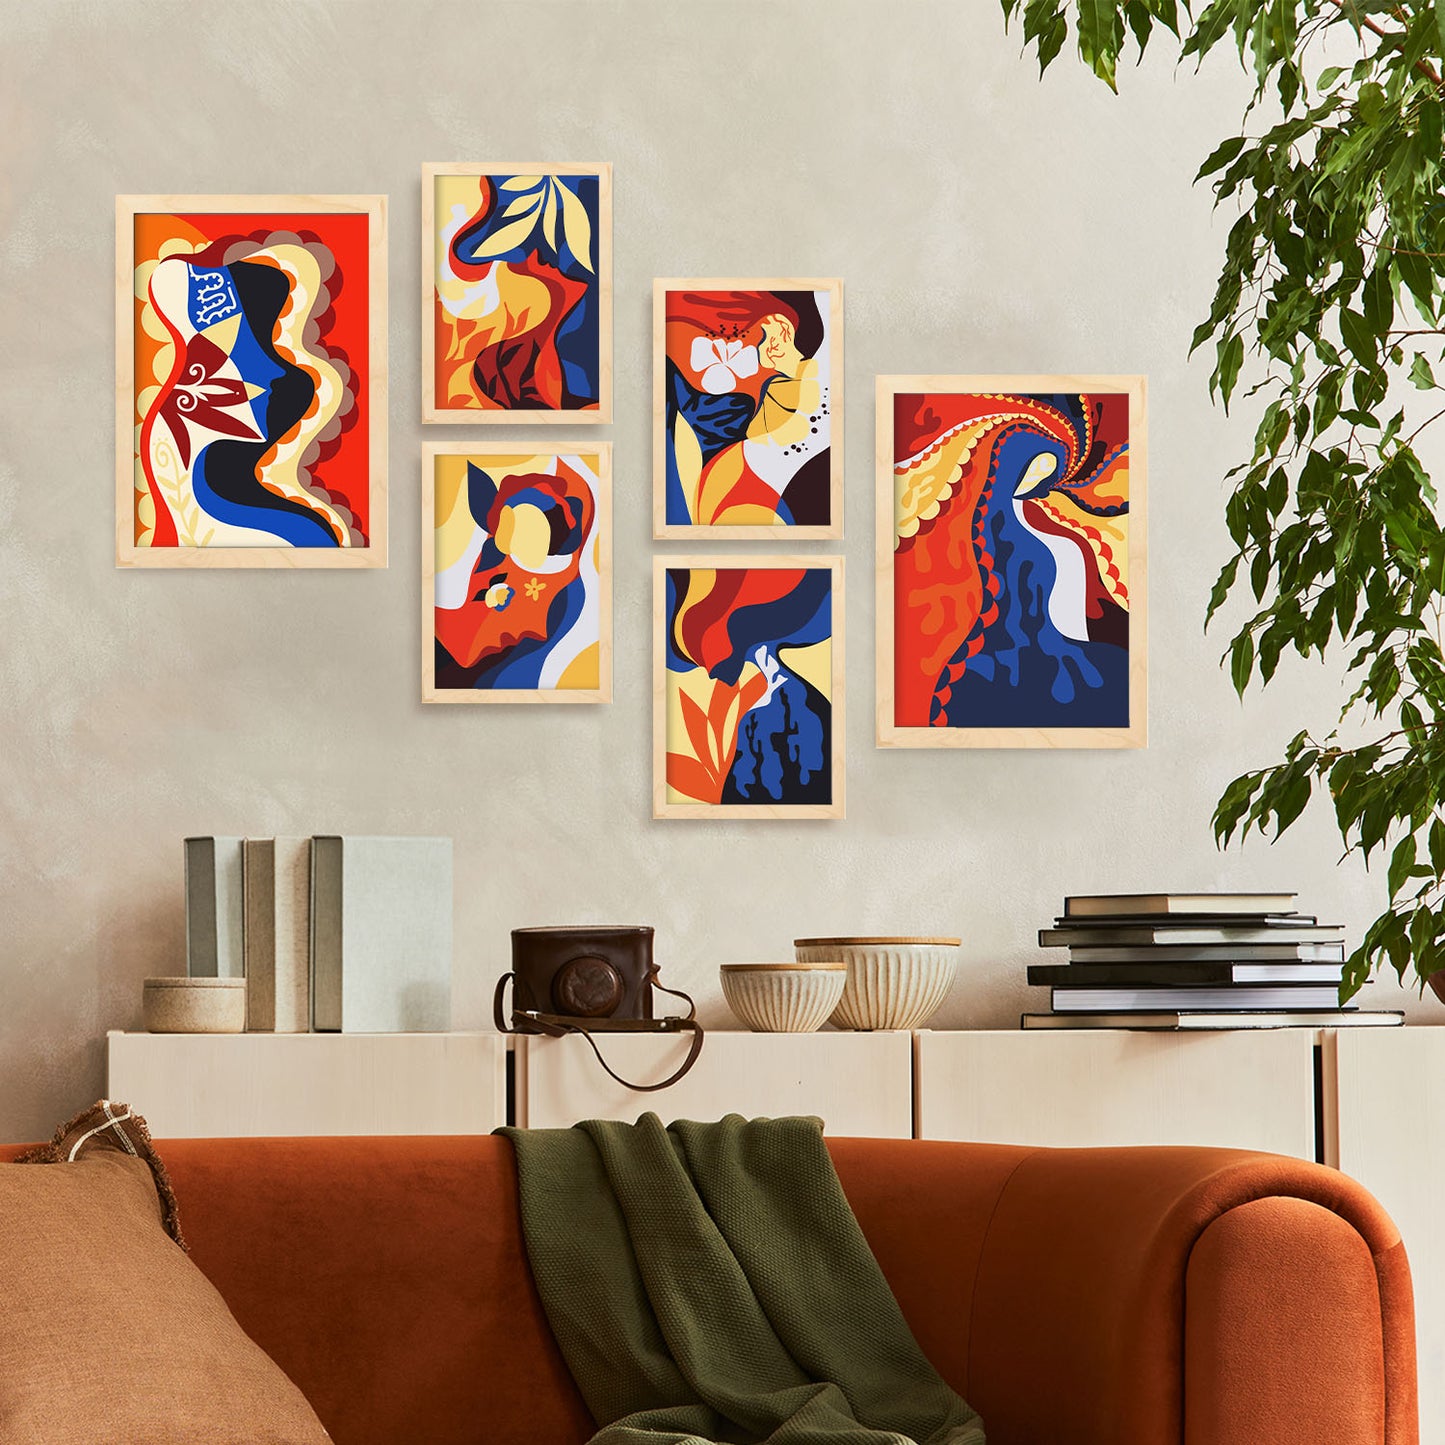 Nacnic Set de 6 Rococo Arts 2 Posters. En Abstracto femenino. Estampados decorativos estéticos para su sala de estar, dormitorio, hogar Tamaños A4 y A3